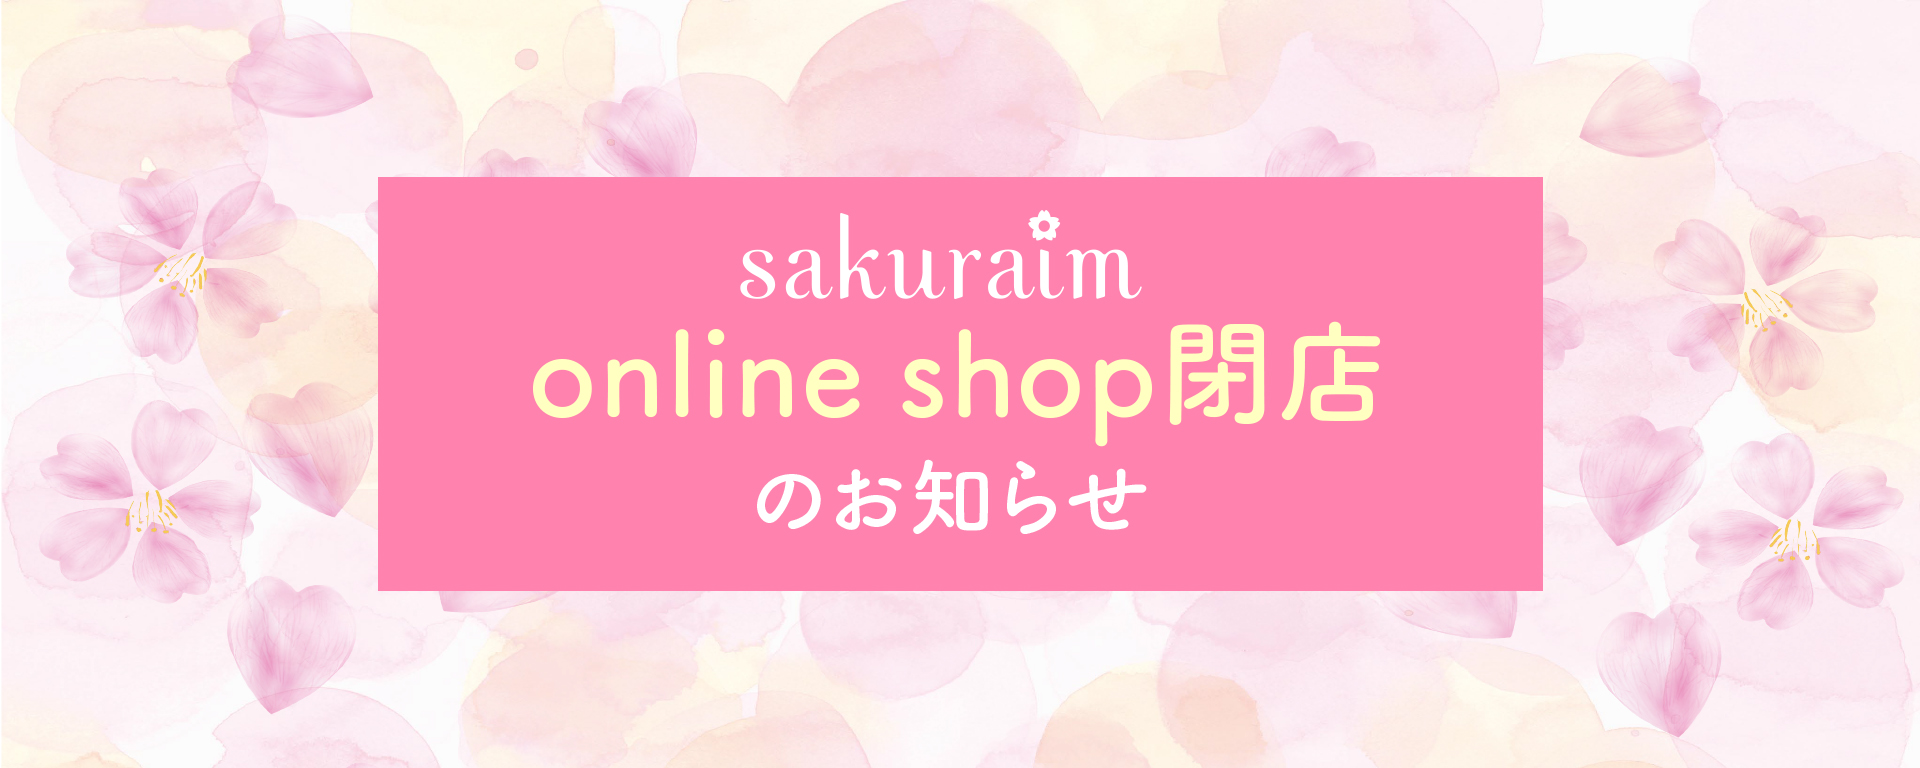 sakuraim online shop閉店に関するお知らせ